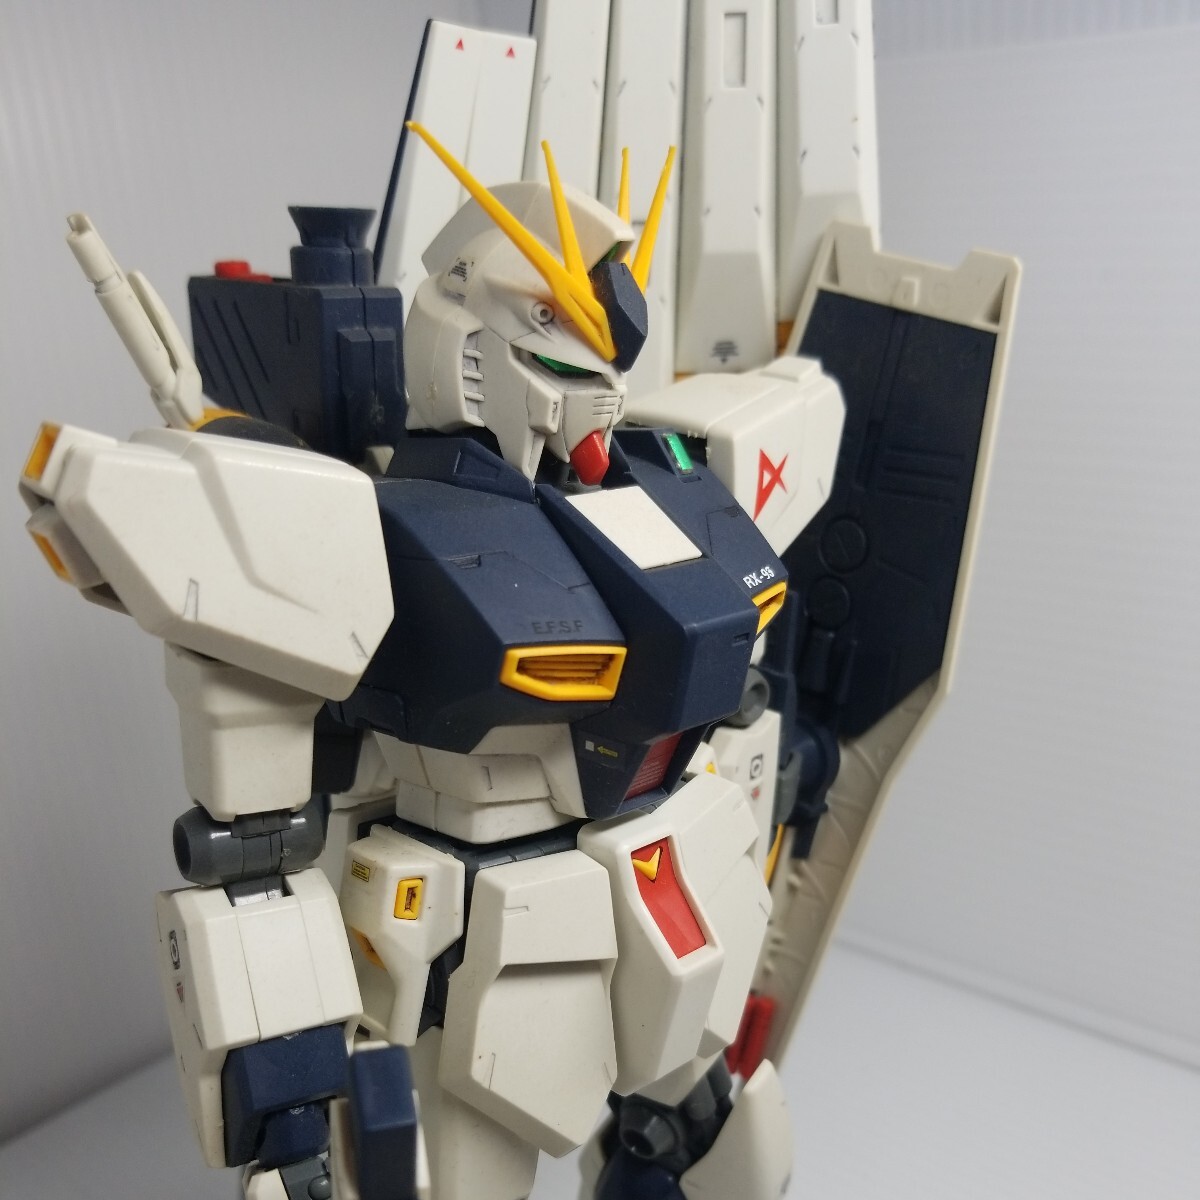 C-340g 5/10 MG новый Gundam Gundam включение в покупку возможно gun pra Junk 